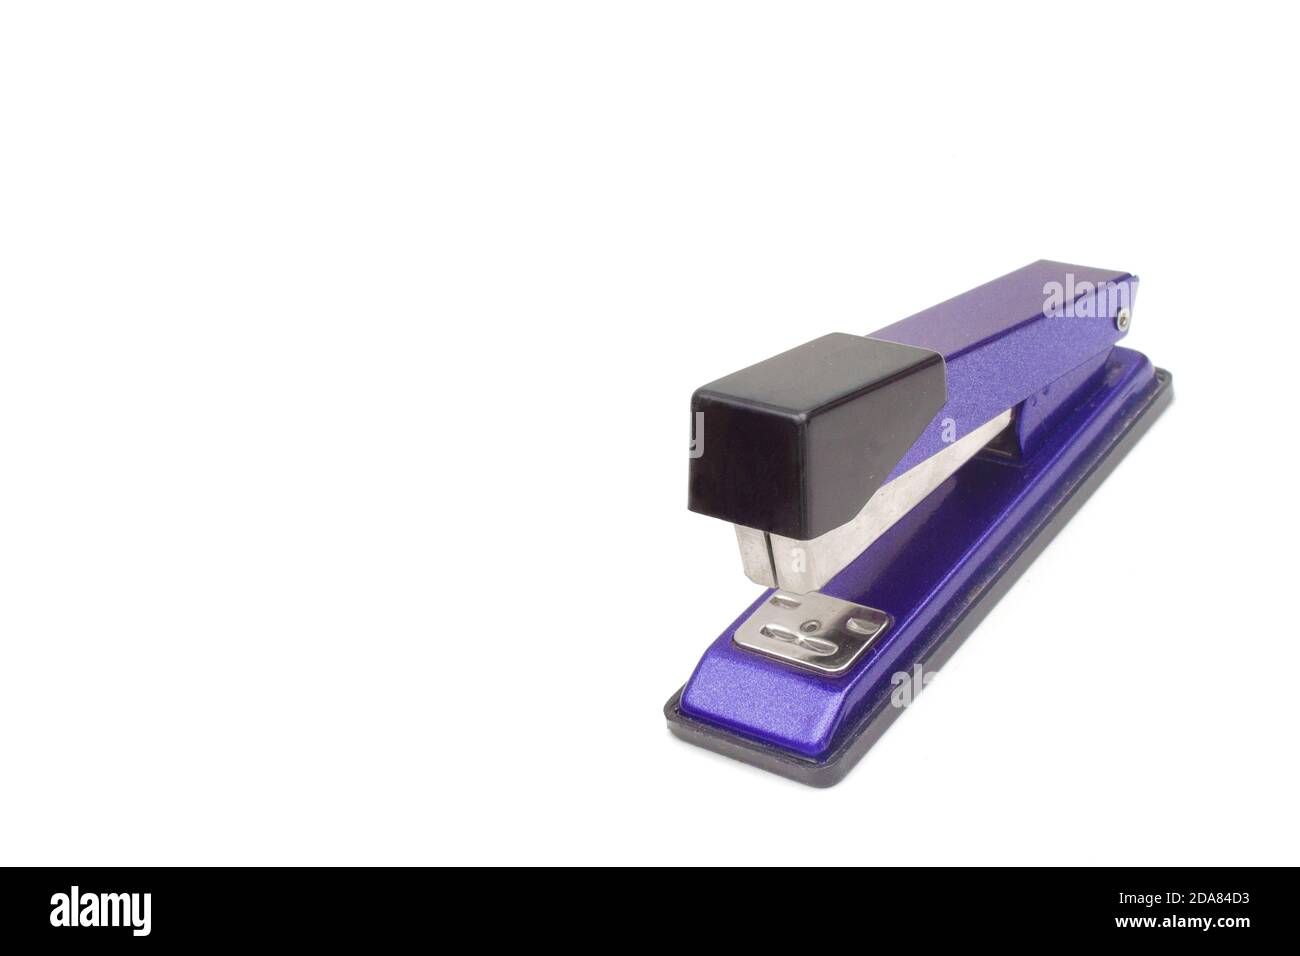 Single Stapler Isolated On White Background A New Purple Stapler